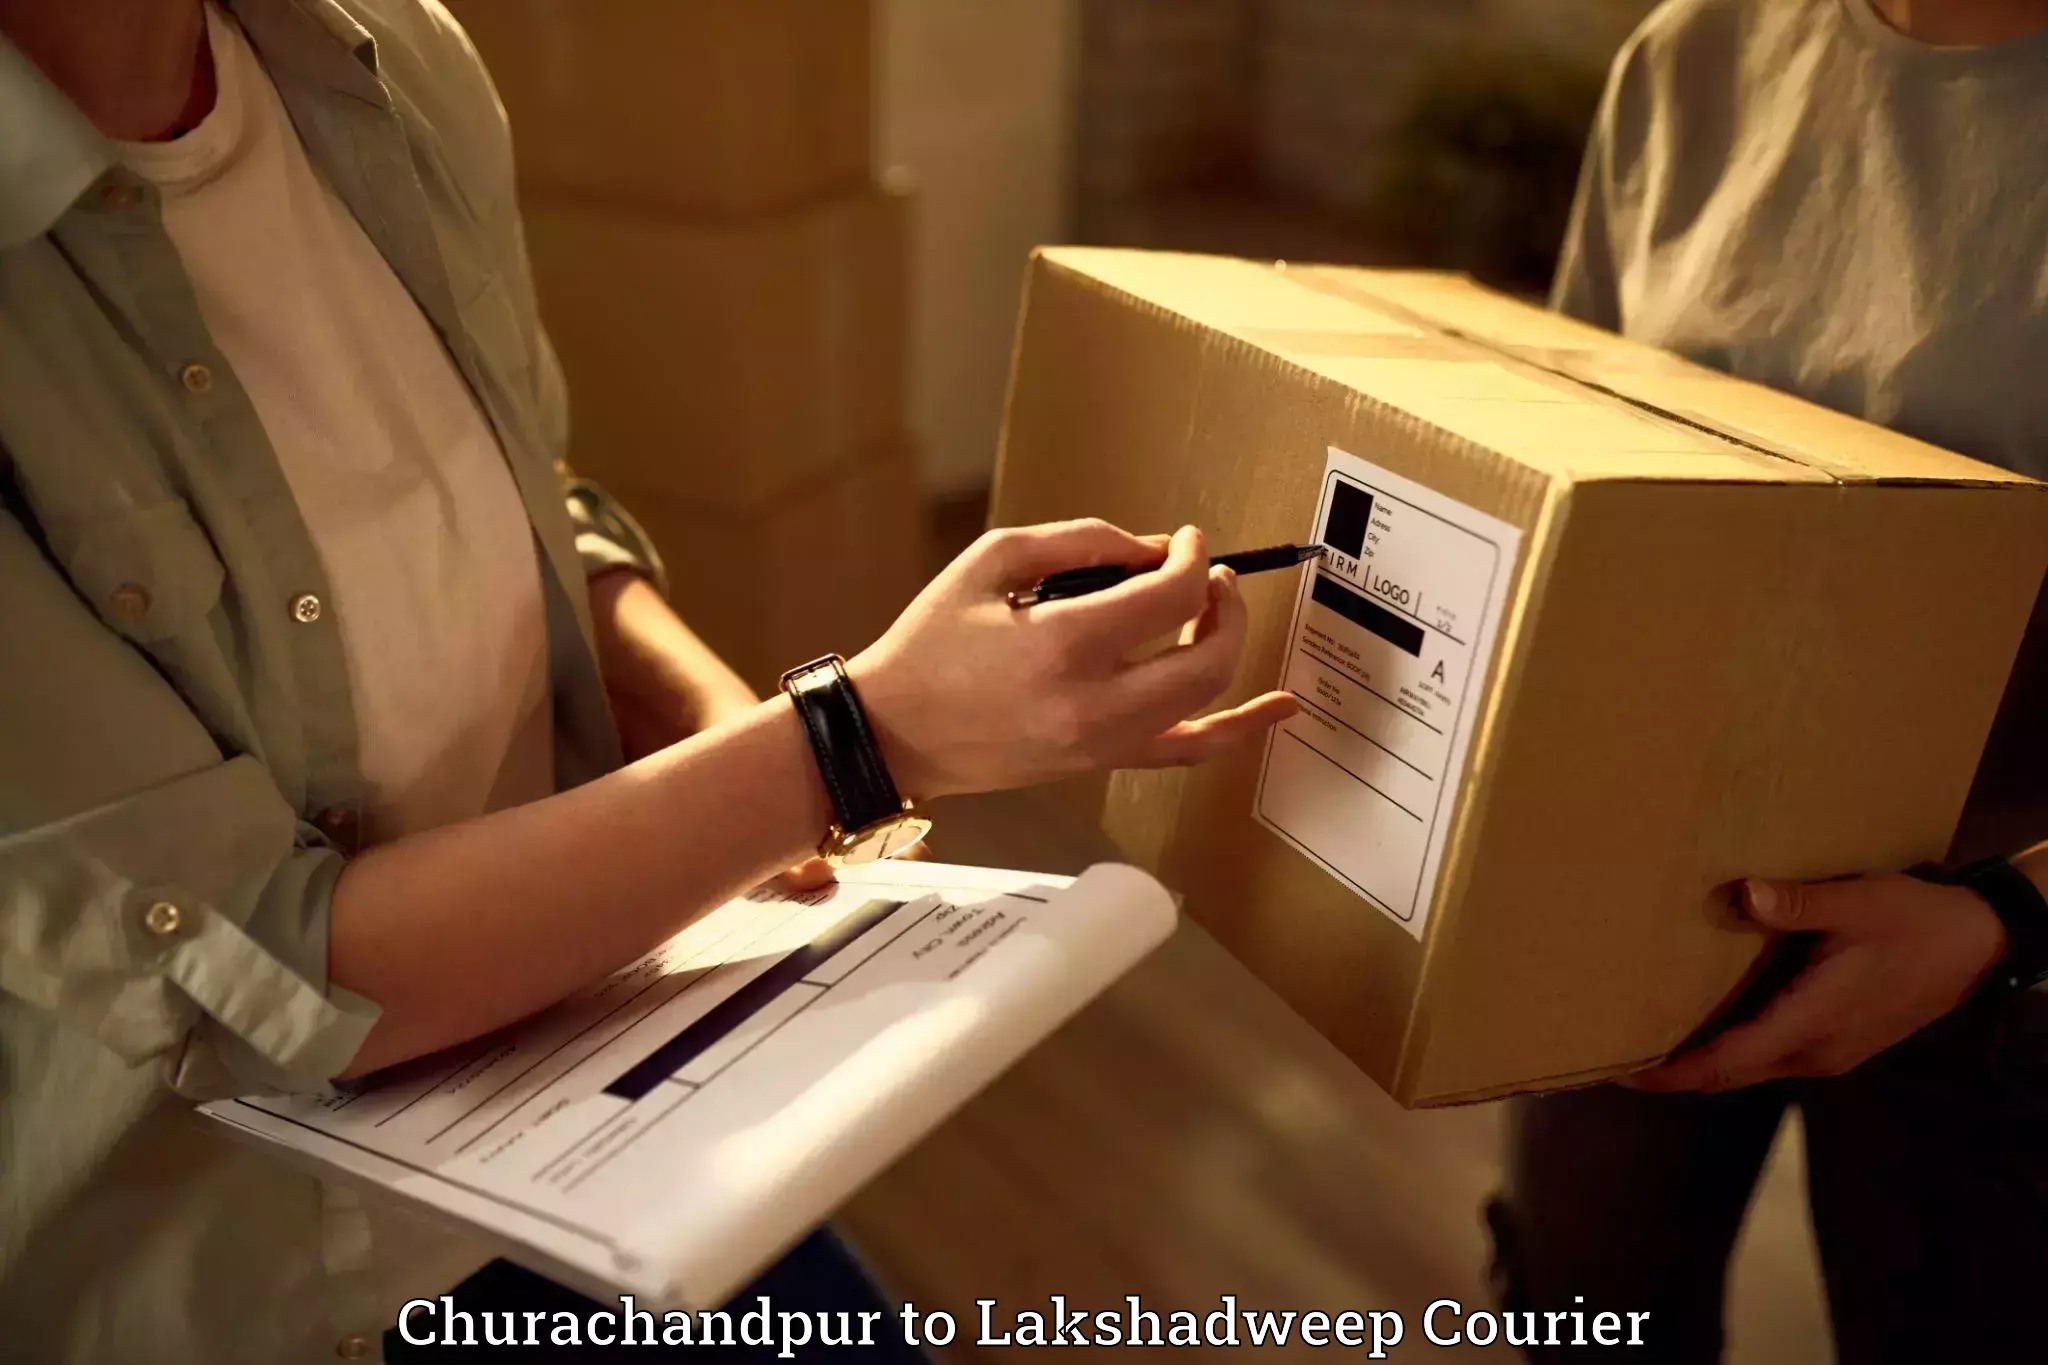 Furniture moving experts Churachandpur to Lakshadweep